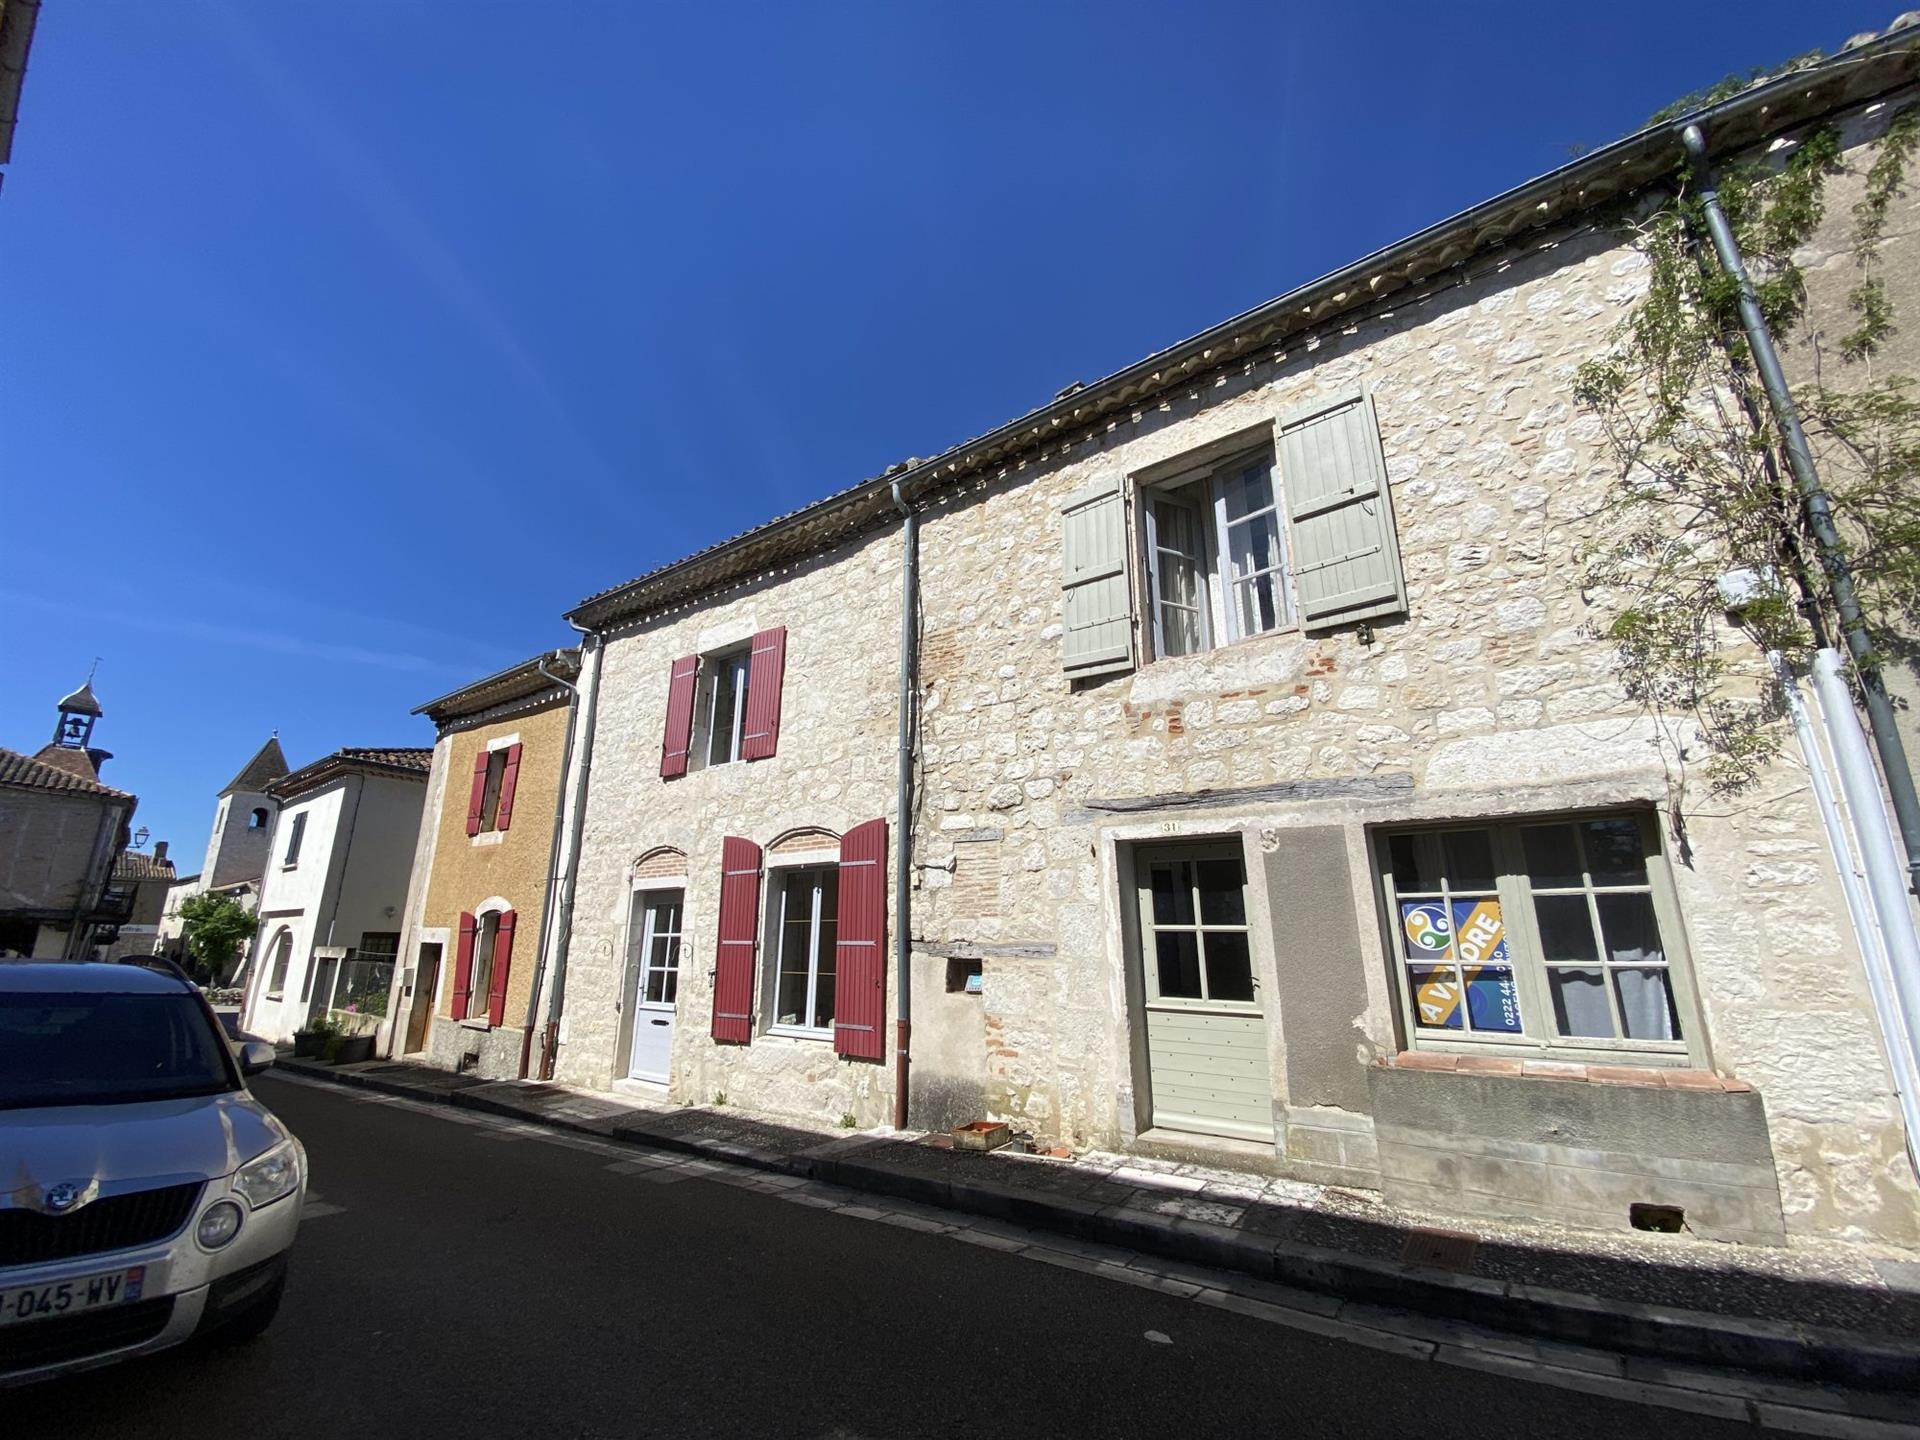  Lot Et Garonne Maison de village historique avec 3 chambres, à deux pas de la place principale